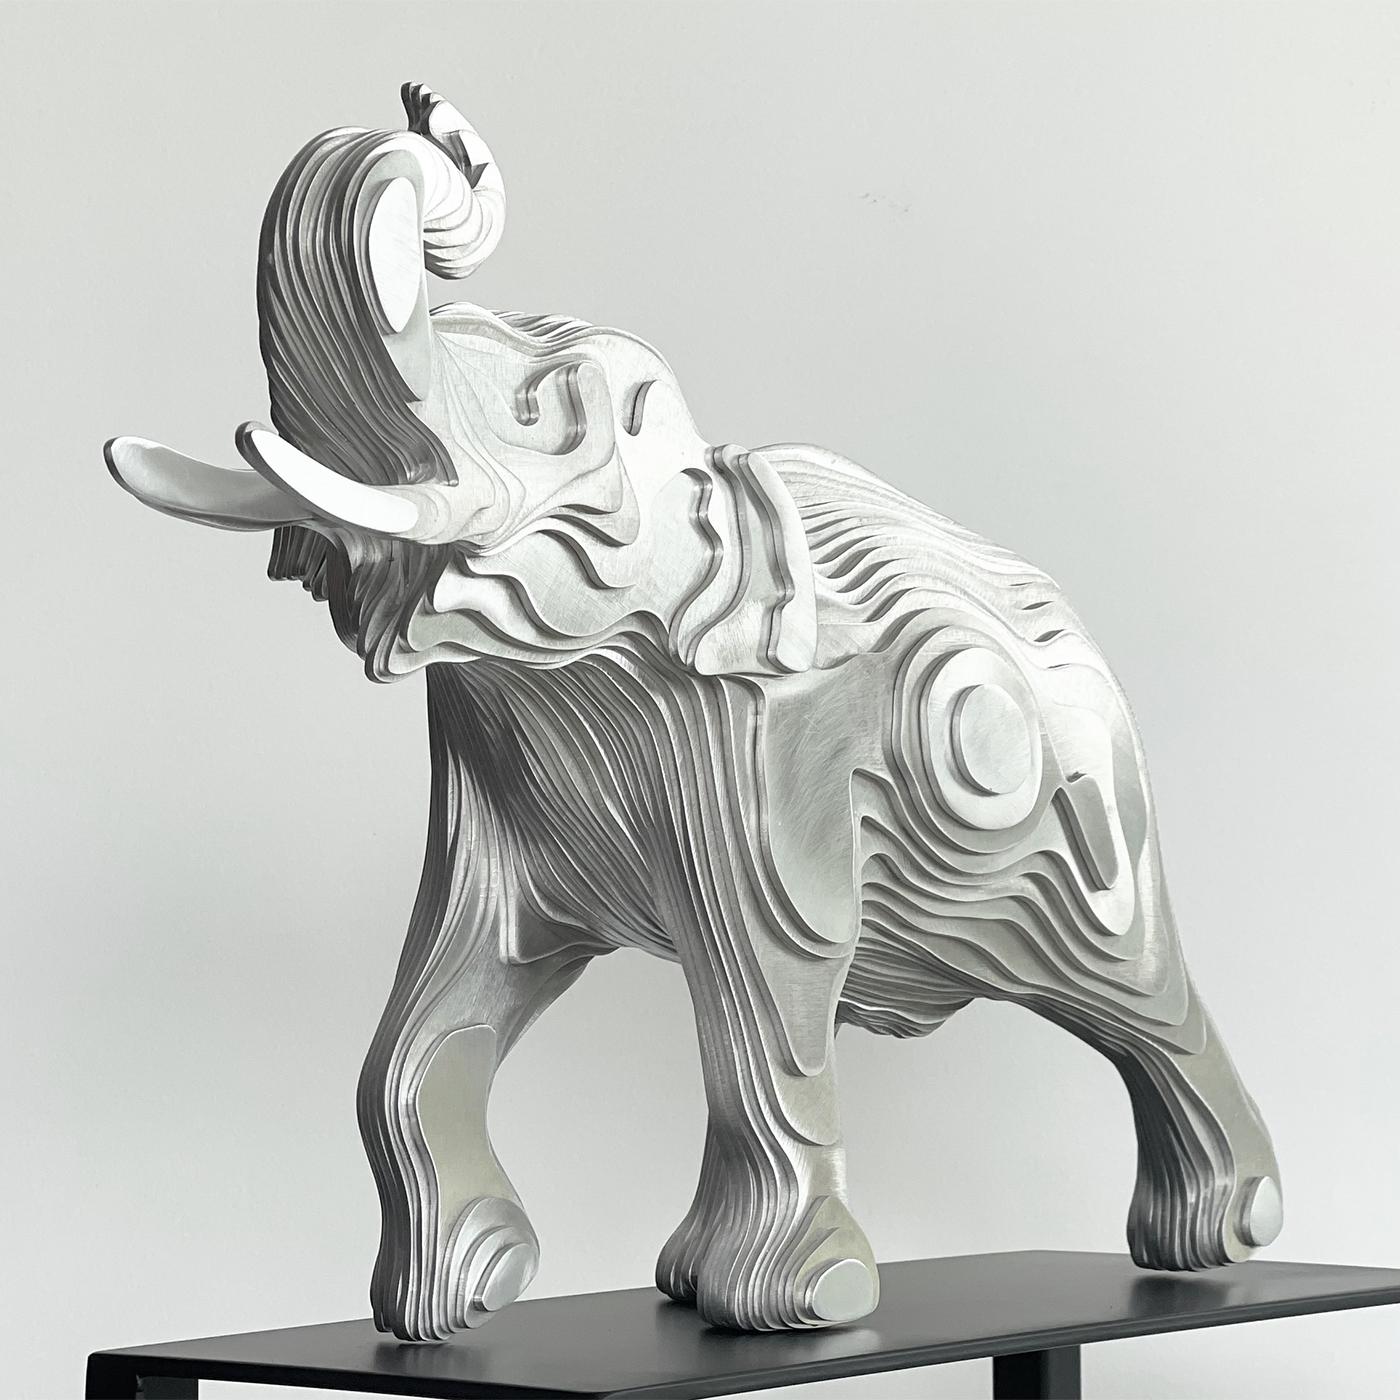 Skulptur Elefant poliert mit Aluminium hergestellt 
Handgefertigte Teller. Außergewöhnliches Stück aus 
Aluminium geschweißt und geformt zu meisterhaften 
Werke der zeitgenössischen Kunst.